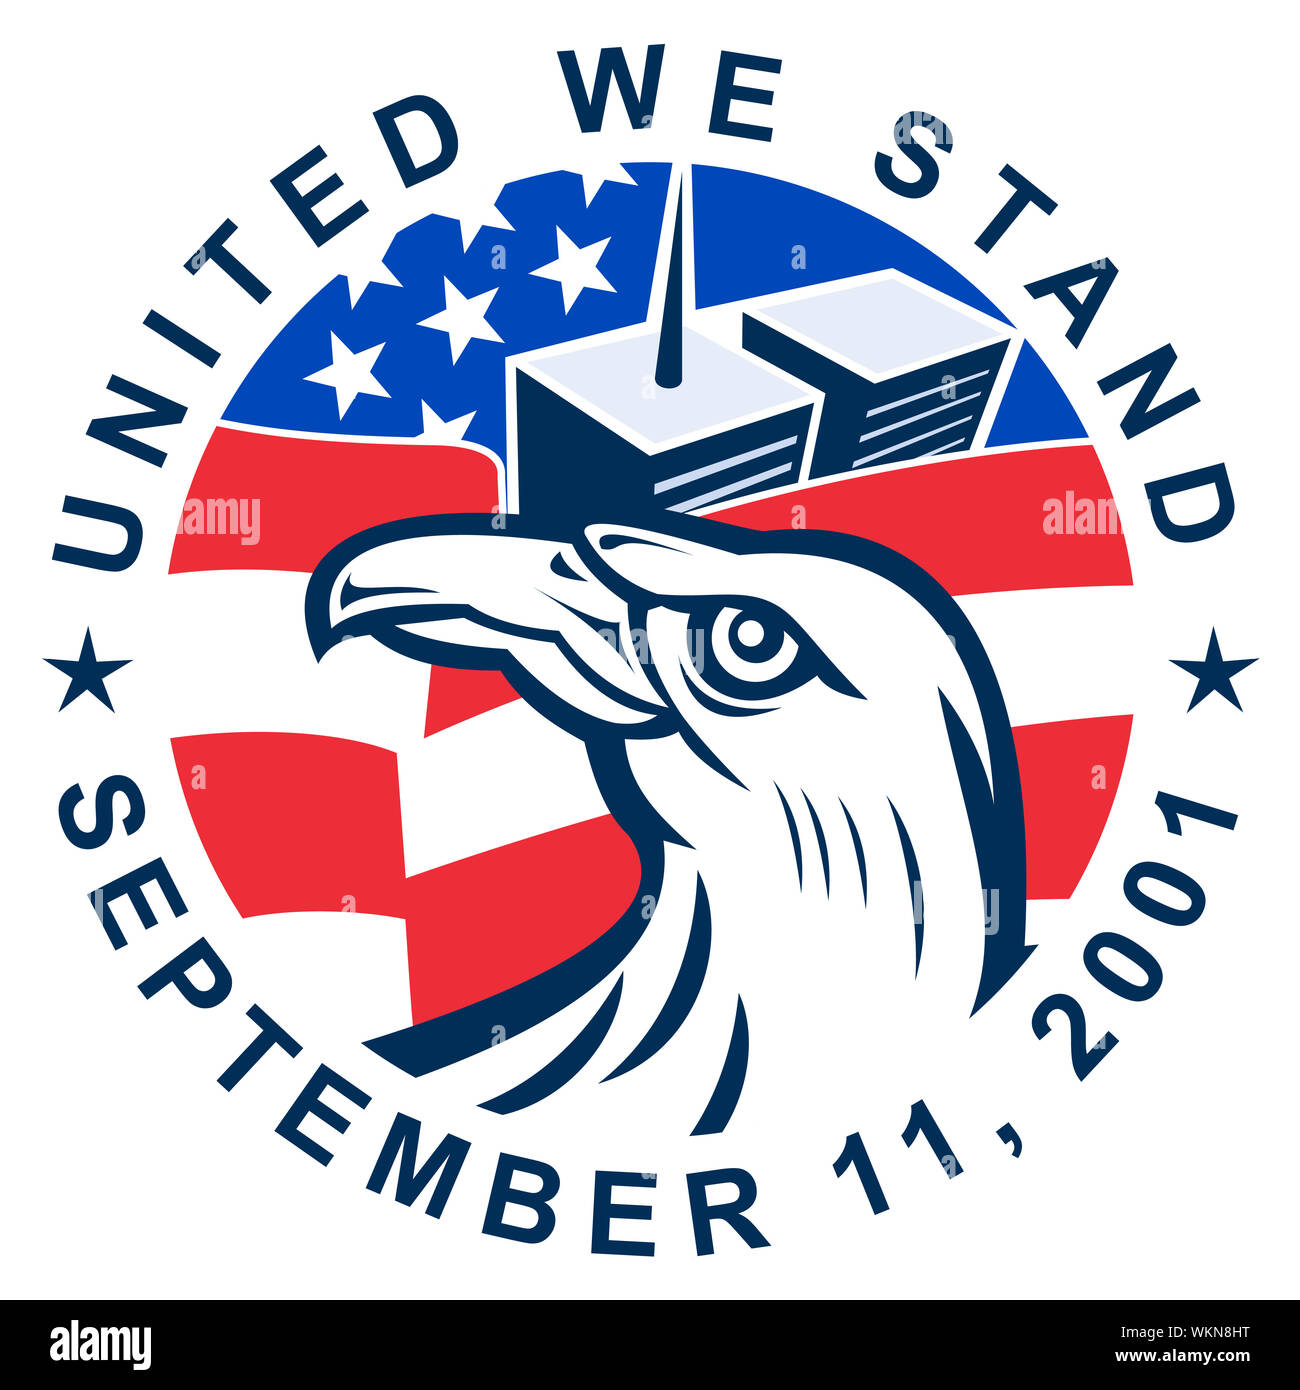 Abbildung eines amerikanischen Weißkopfadler mit Usa Fahne Stars and Stripes und 9-11 World Trade Center Twin Tower Gebäude mit Worten United wir stan Stockfoto